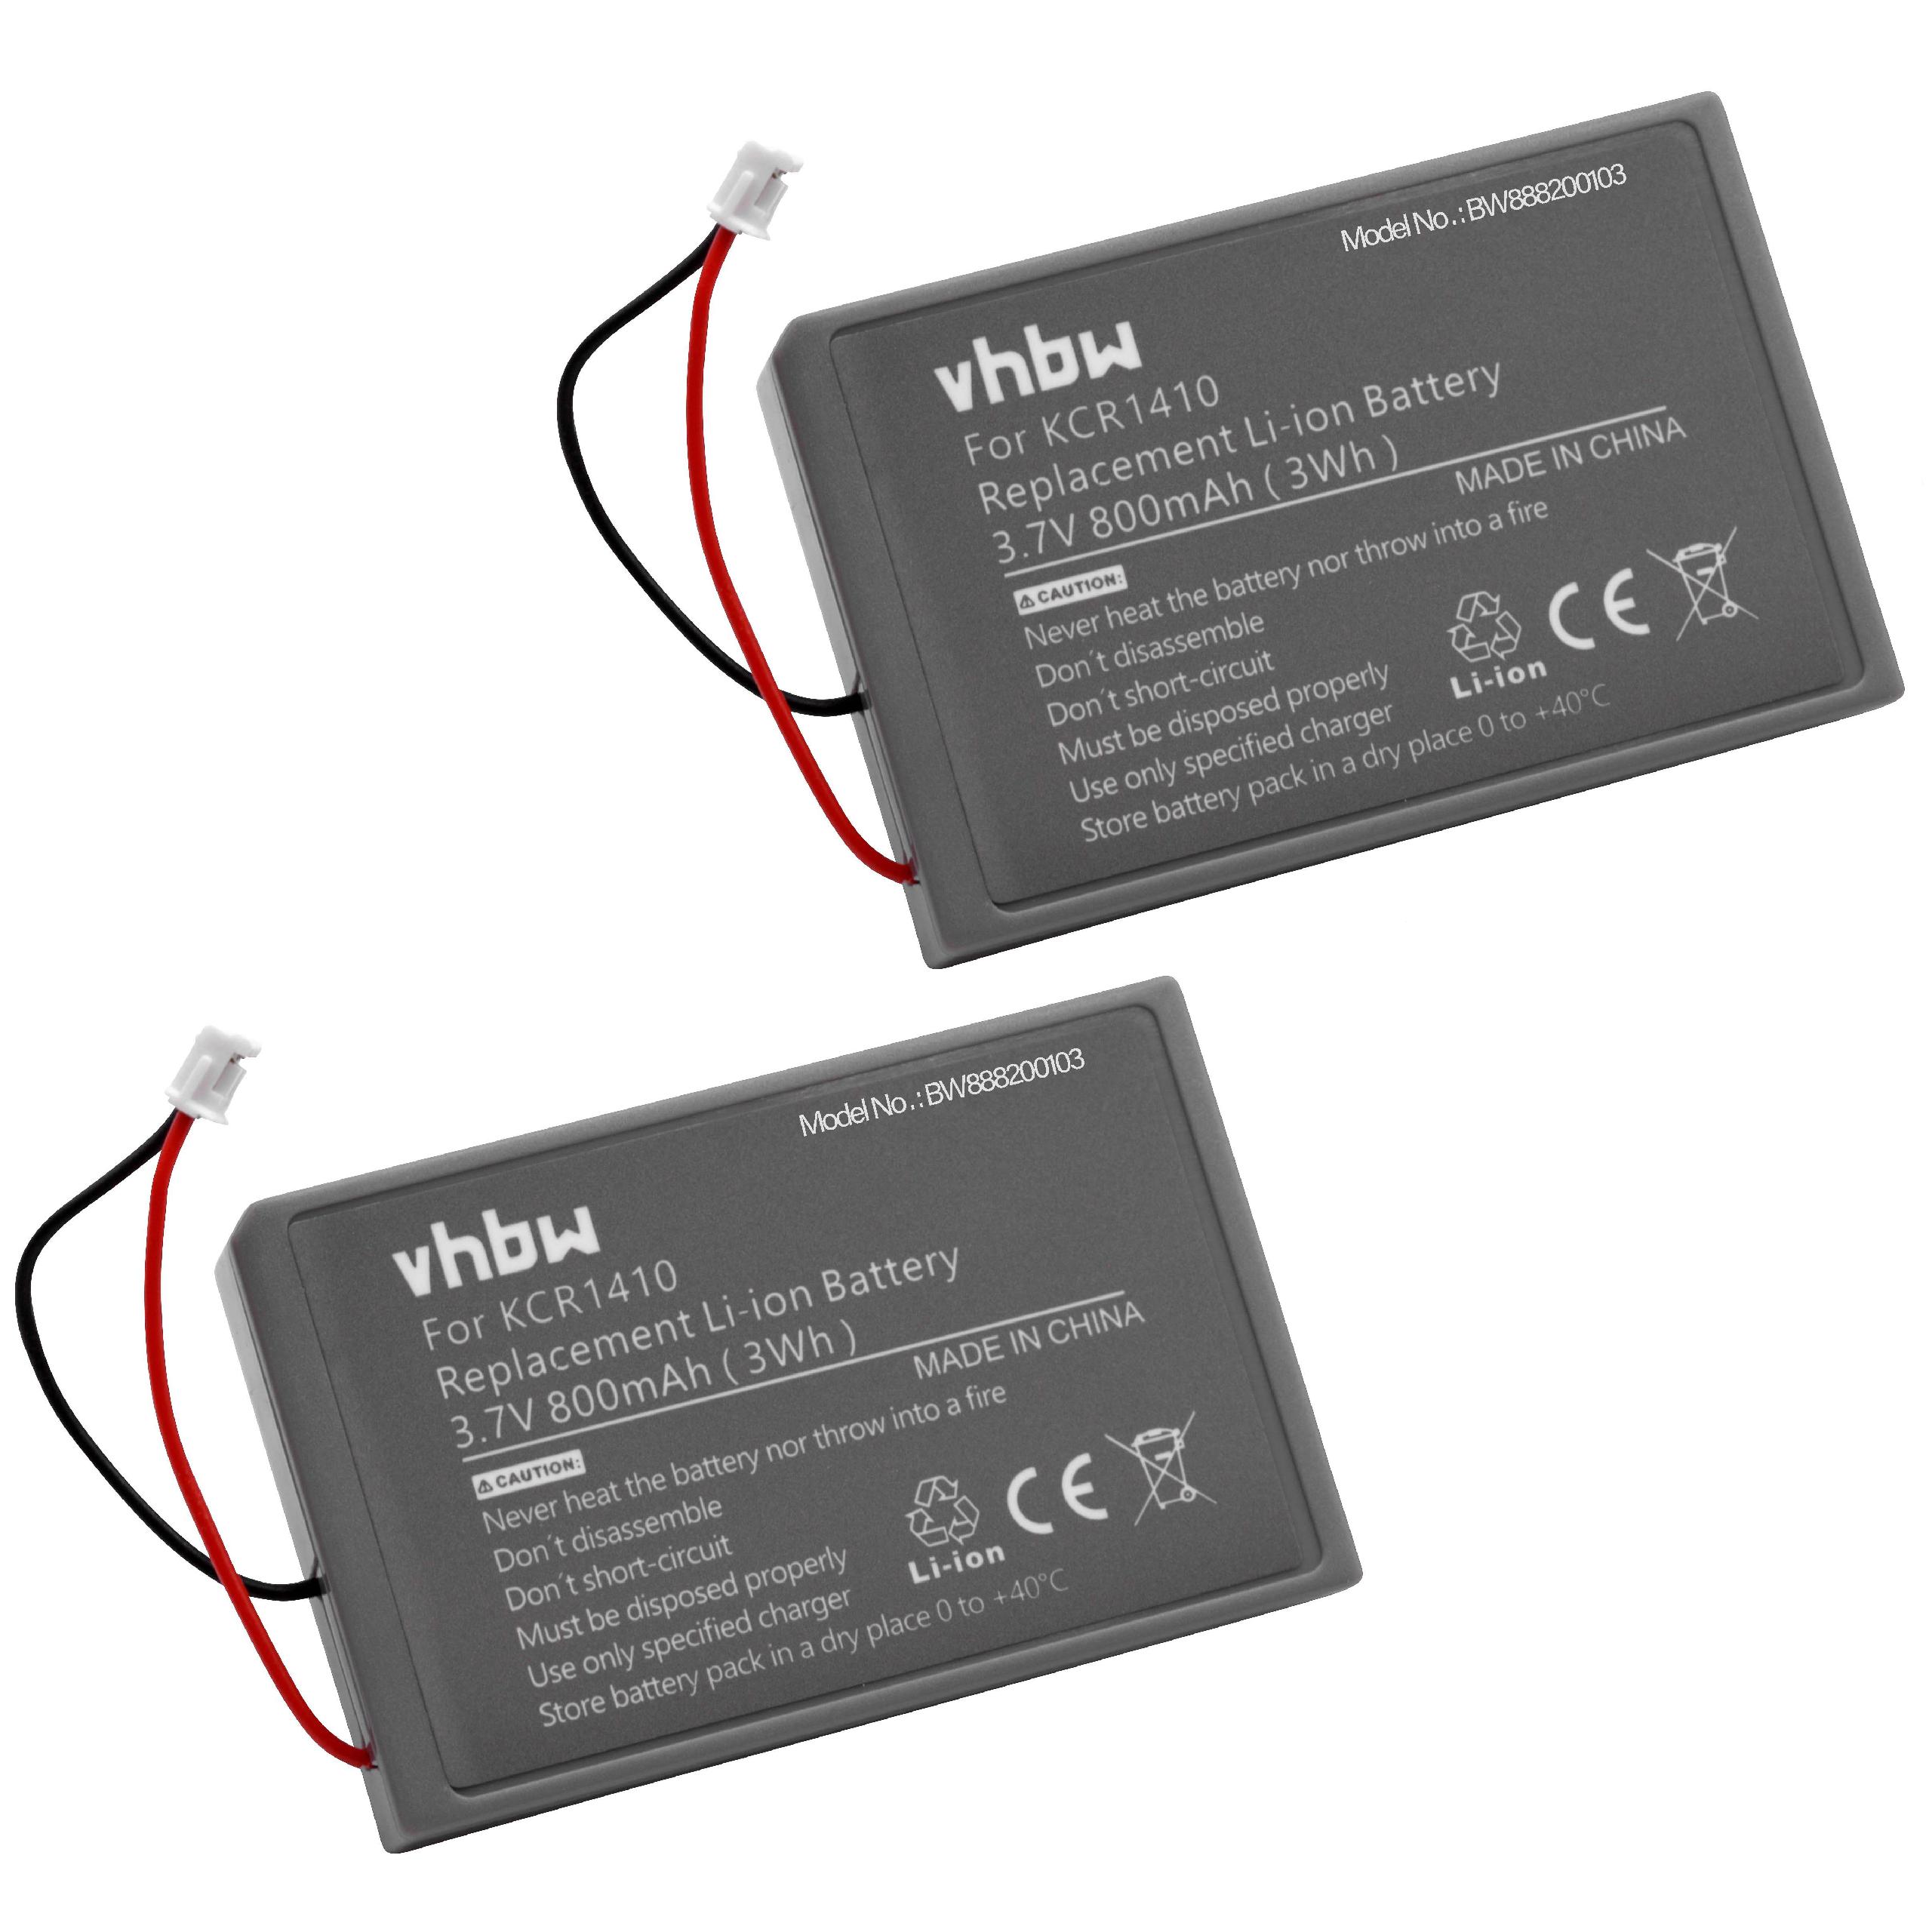 Batteries (2x pièces) remplace Sony Lip1522, KCR1410, CUH-ZCT2U, CUH-ZCT2 pour manette - 800mAh 3,7V Li-ion